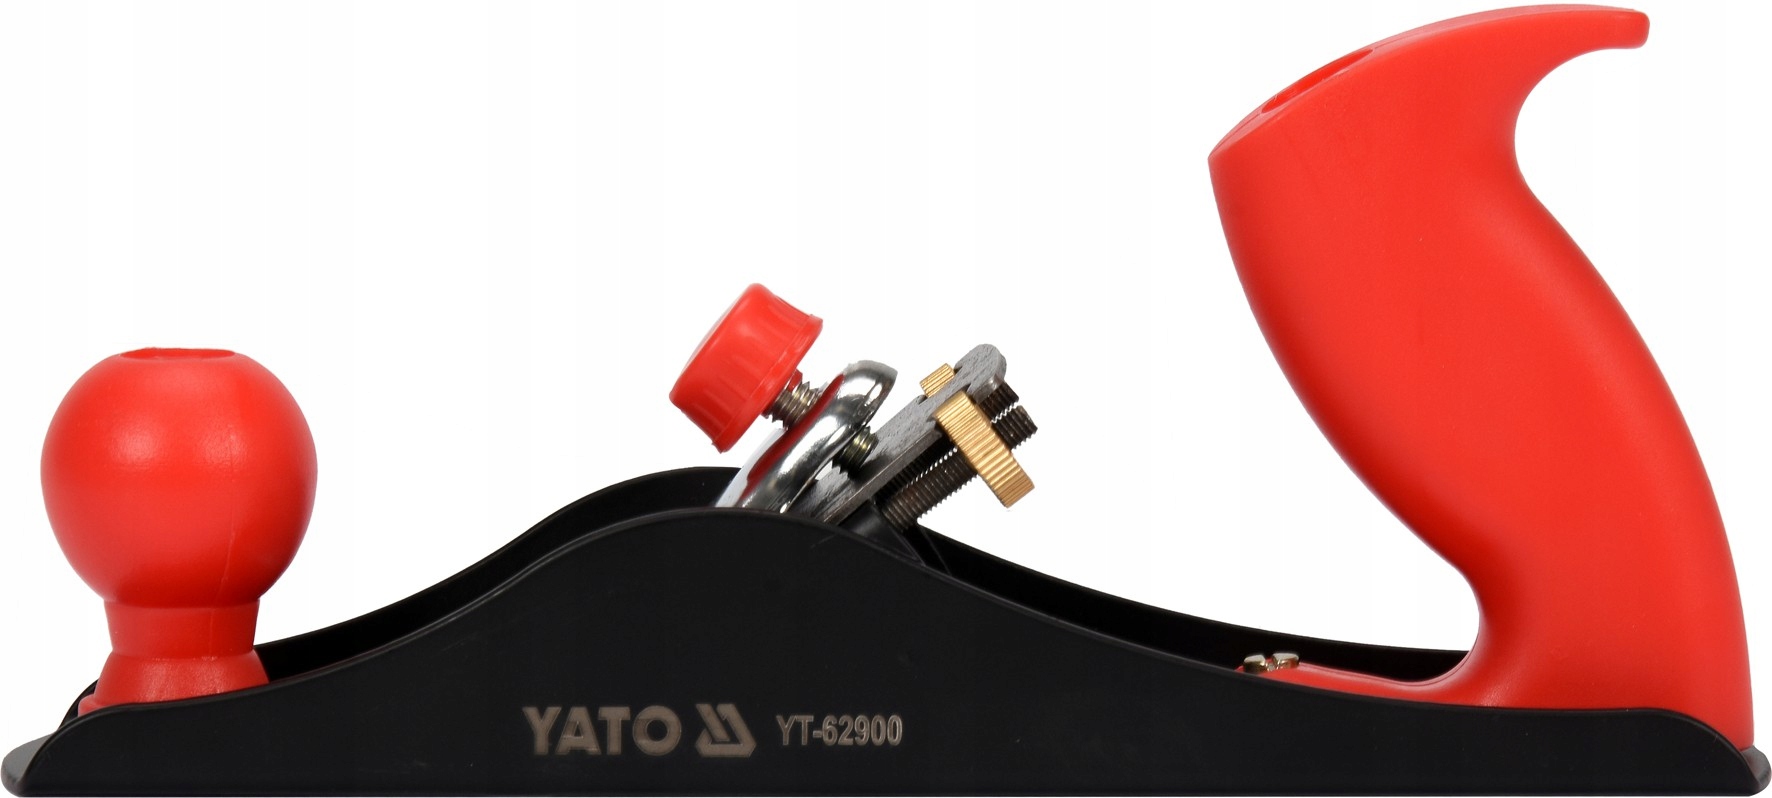 дерев'яний металевий стругальний верстат l-235 мм лезо 44 мм YATO бренд Yato